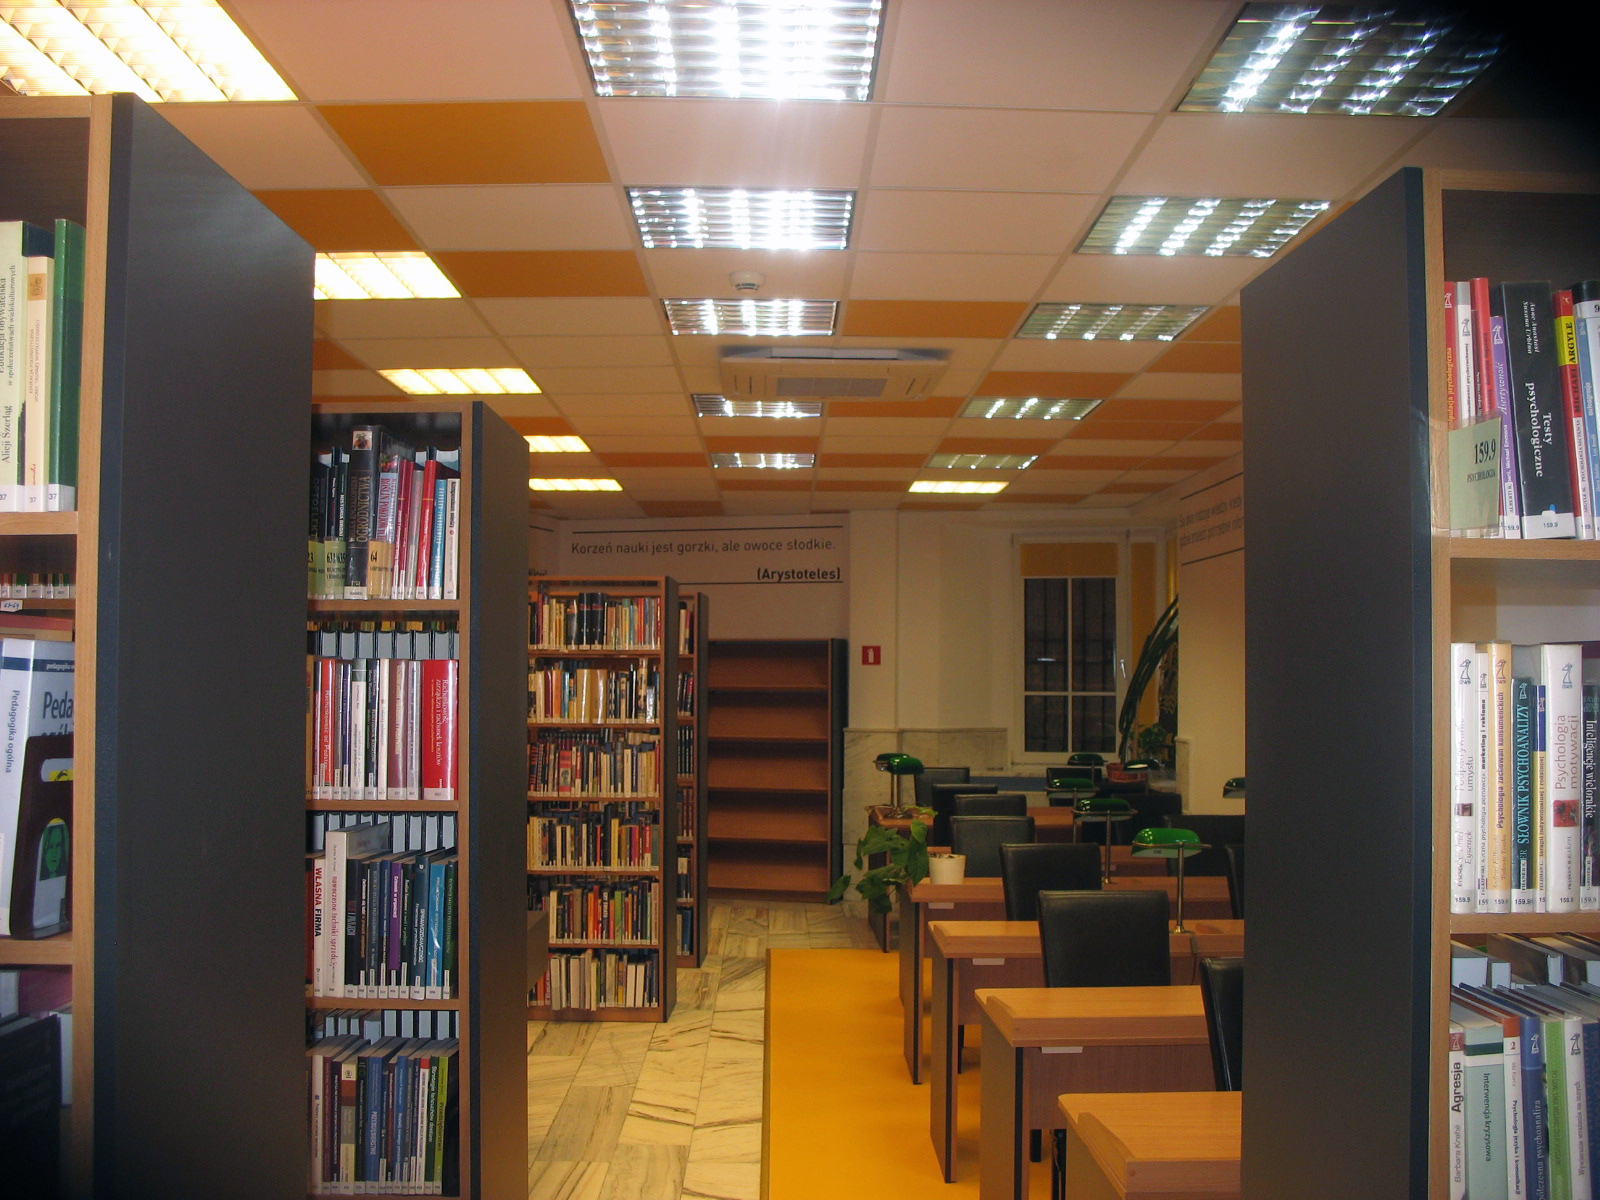 Czytelnia Naukowa nr 16 widok w środku na główną salę - regały z książkami oraz miejsca dla czytelników